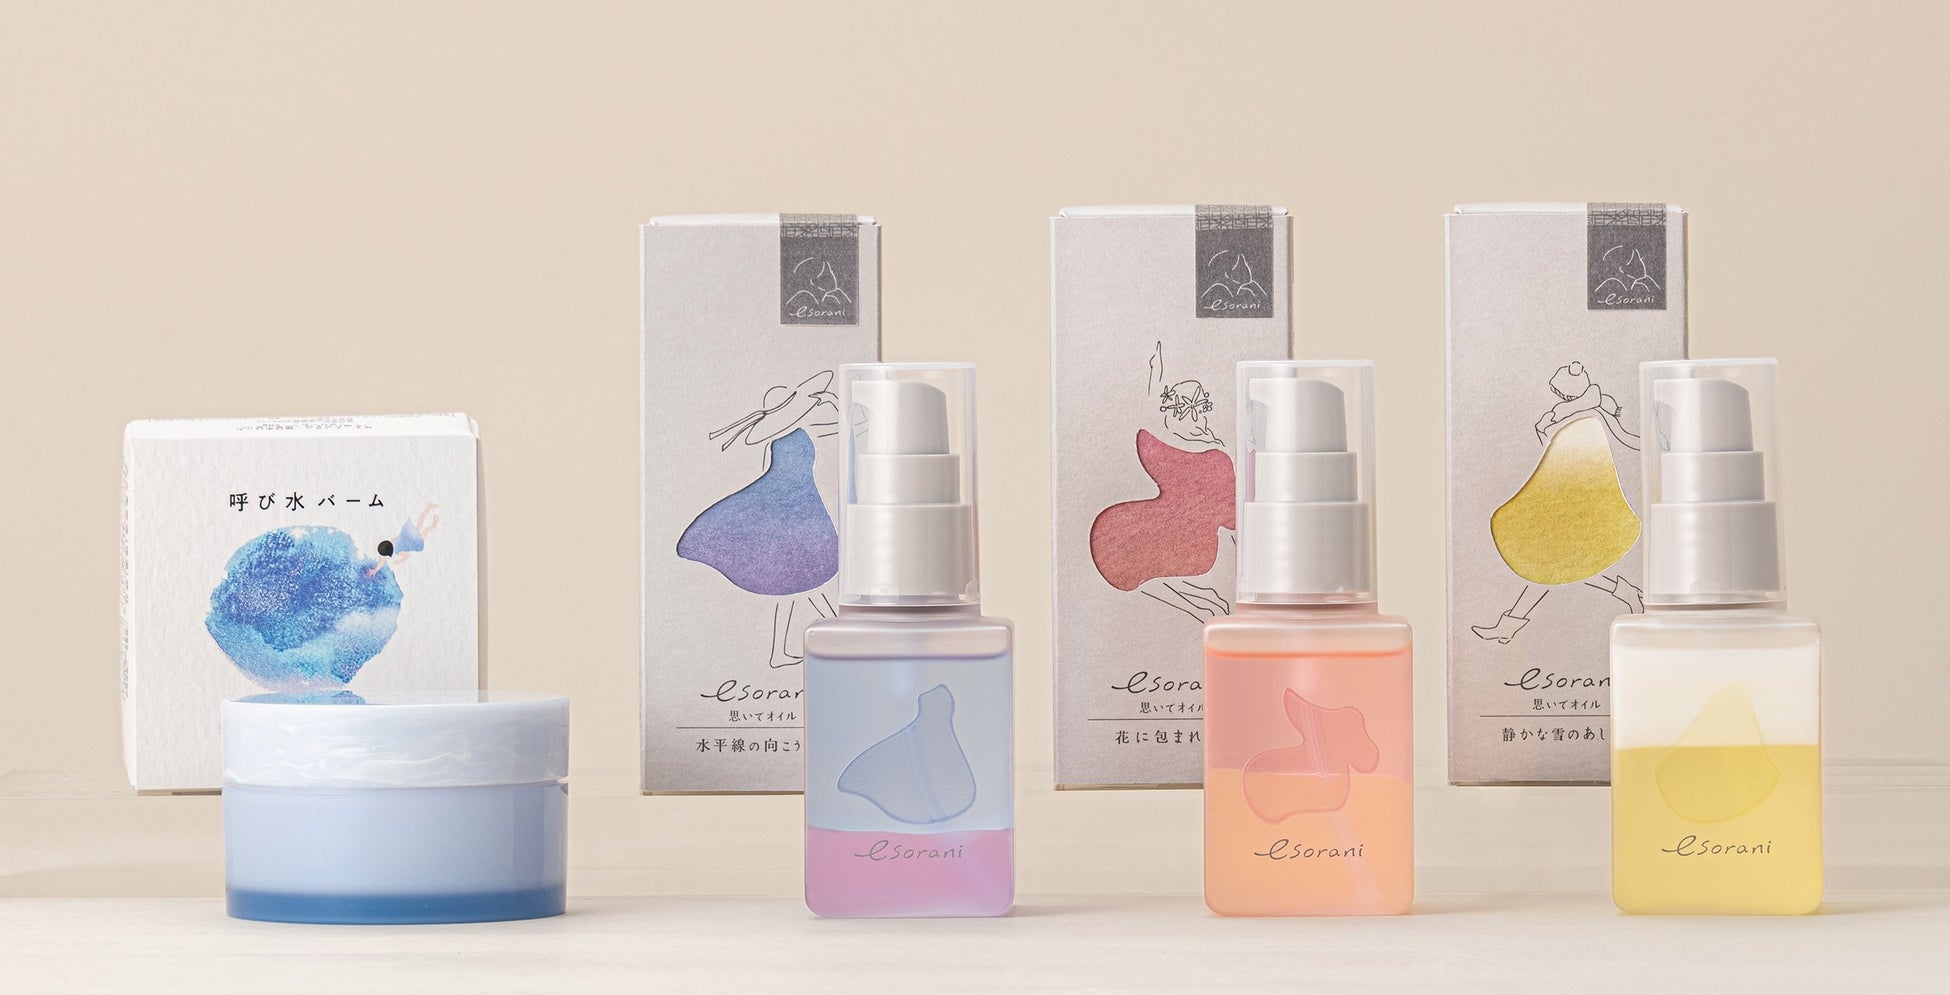 【新ブランド開発ストーリー】「心と肌に響くコスメを届けたい。」化粧品パッケージデザイナーが作ったスキンケアブランド『esorani』誕生。